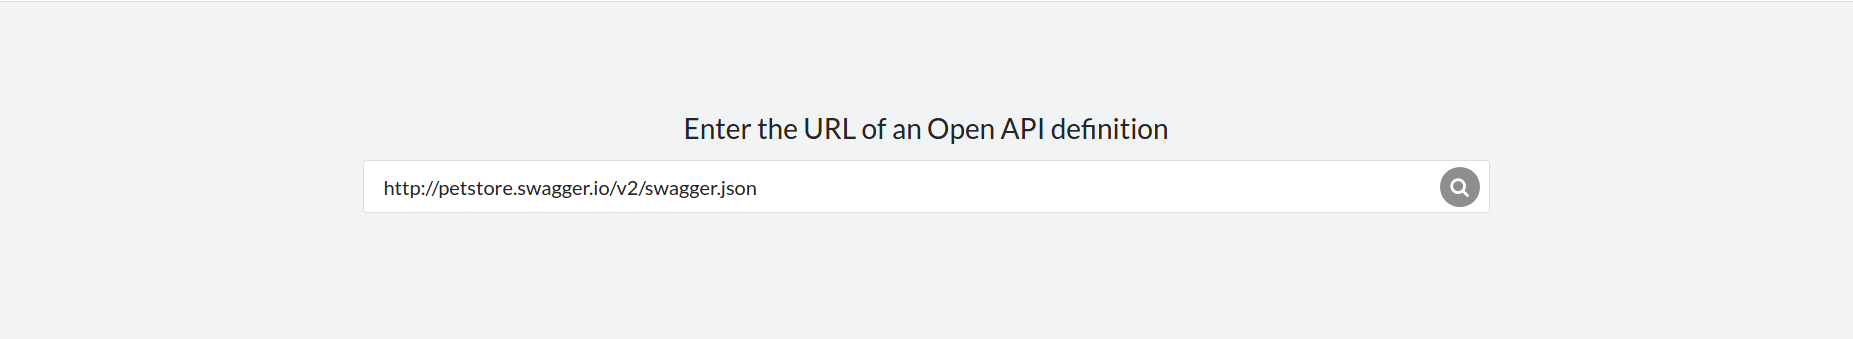 Enter Open API URL